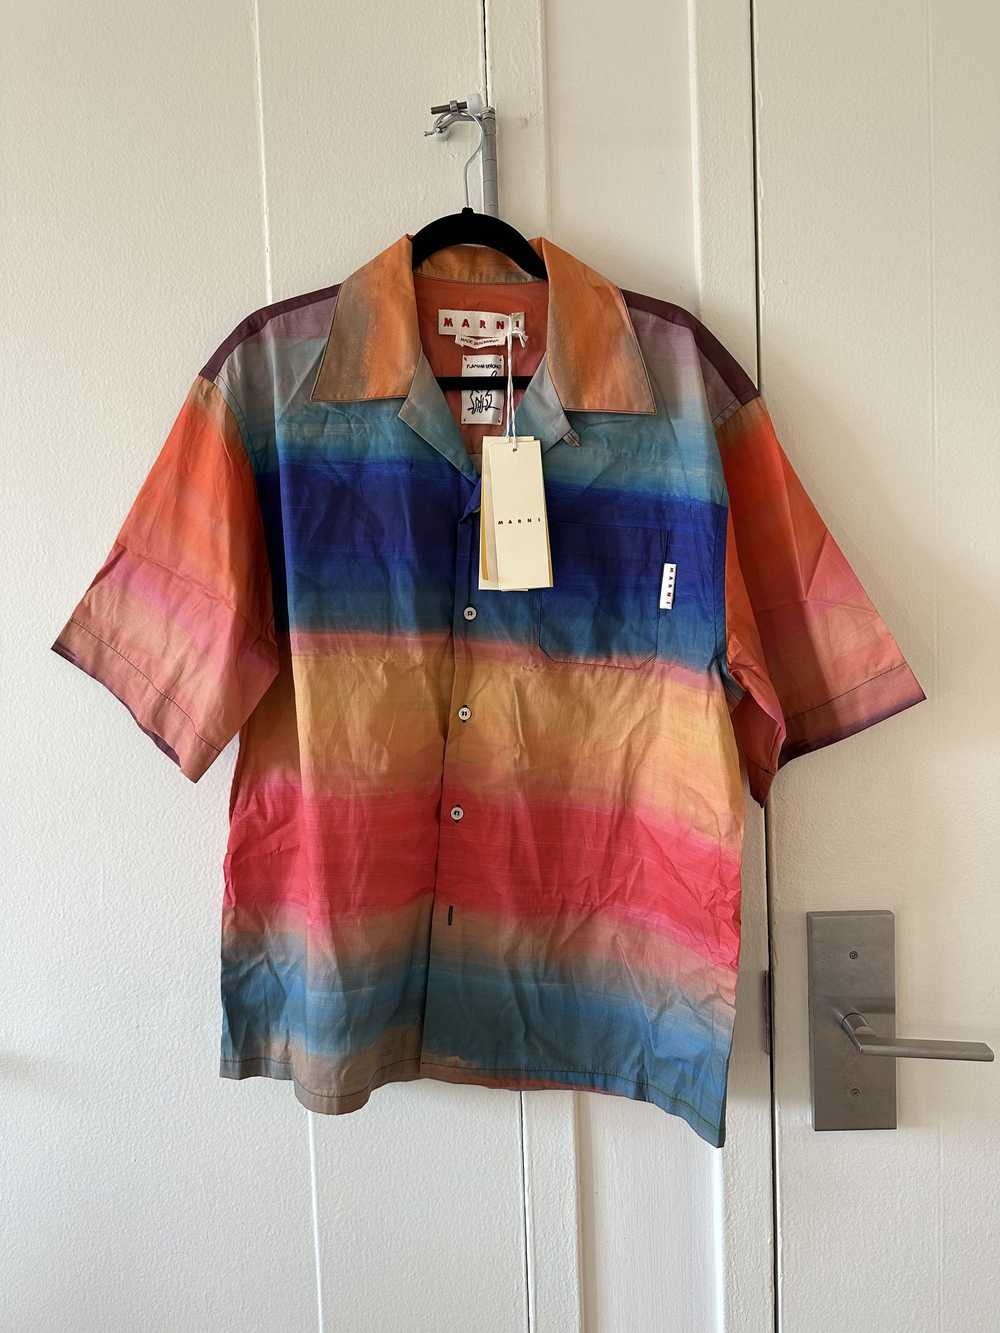 Marni Marni Striped Camp Collar Button Up Shirt - image 1